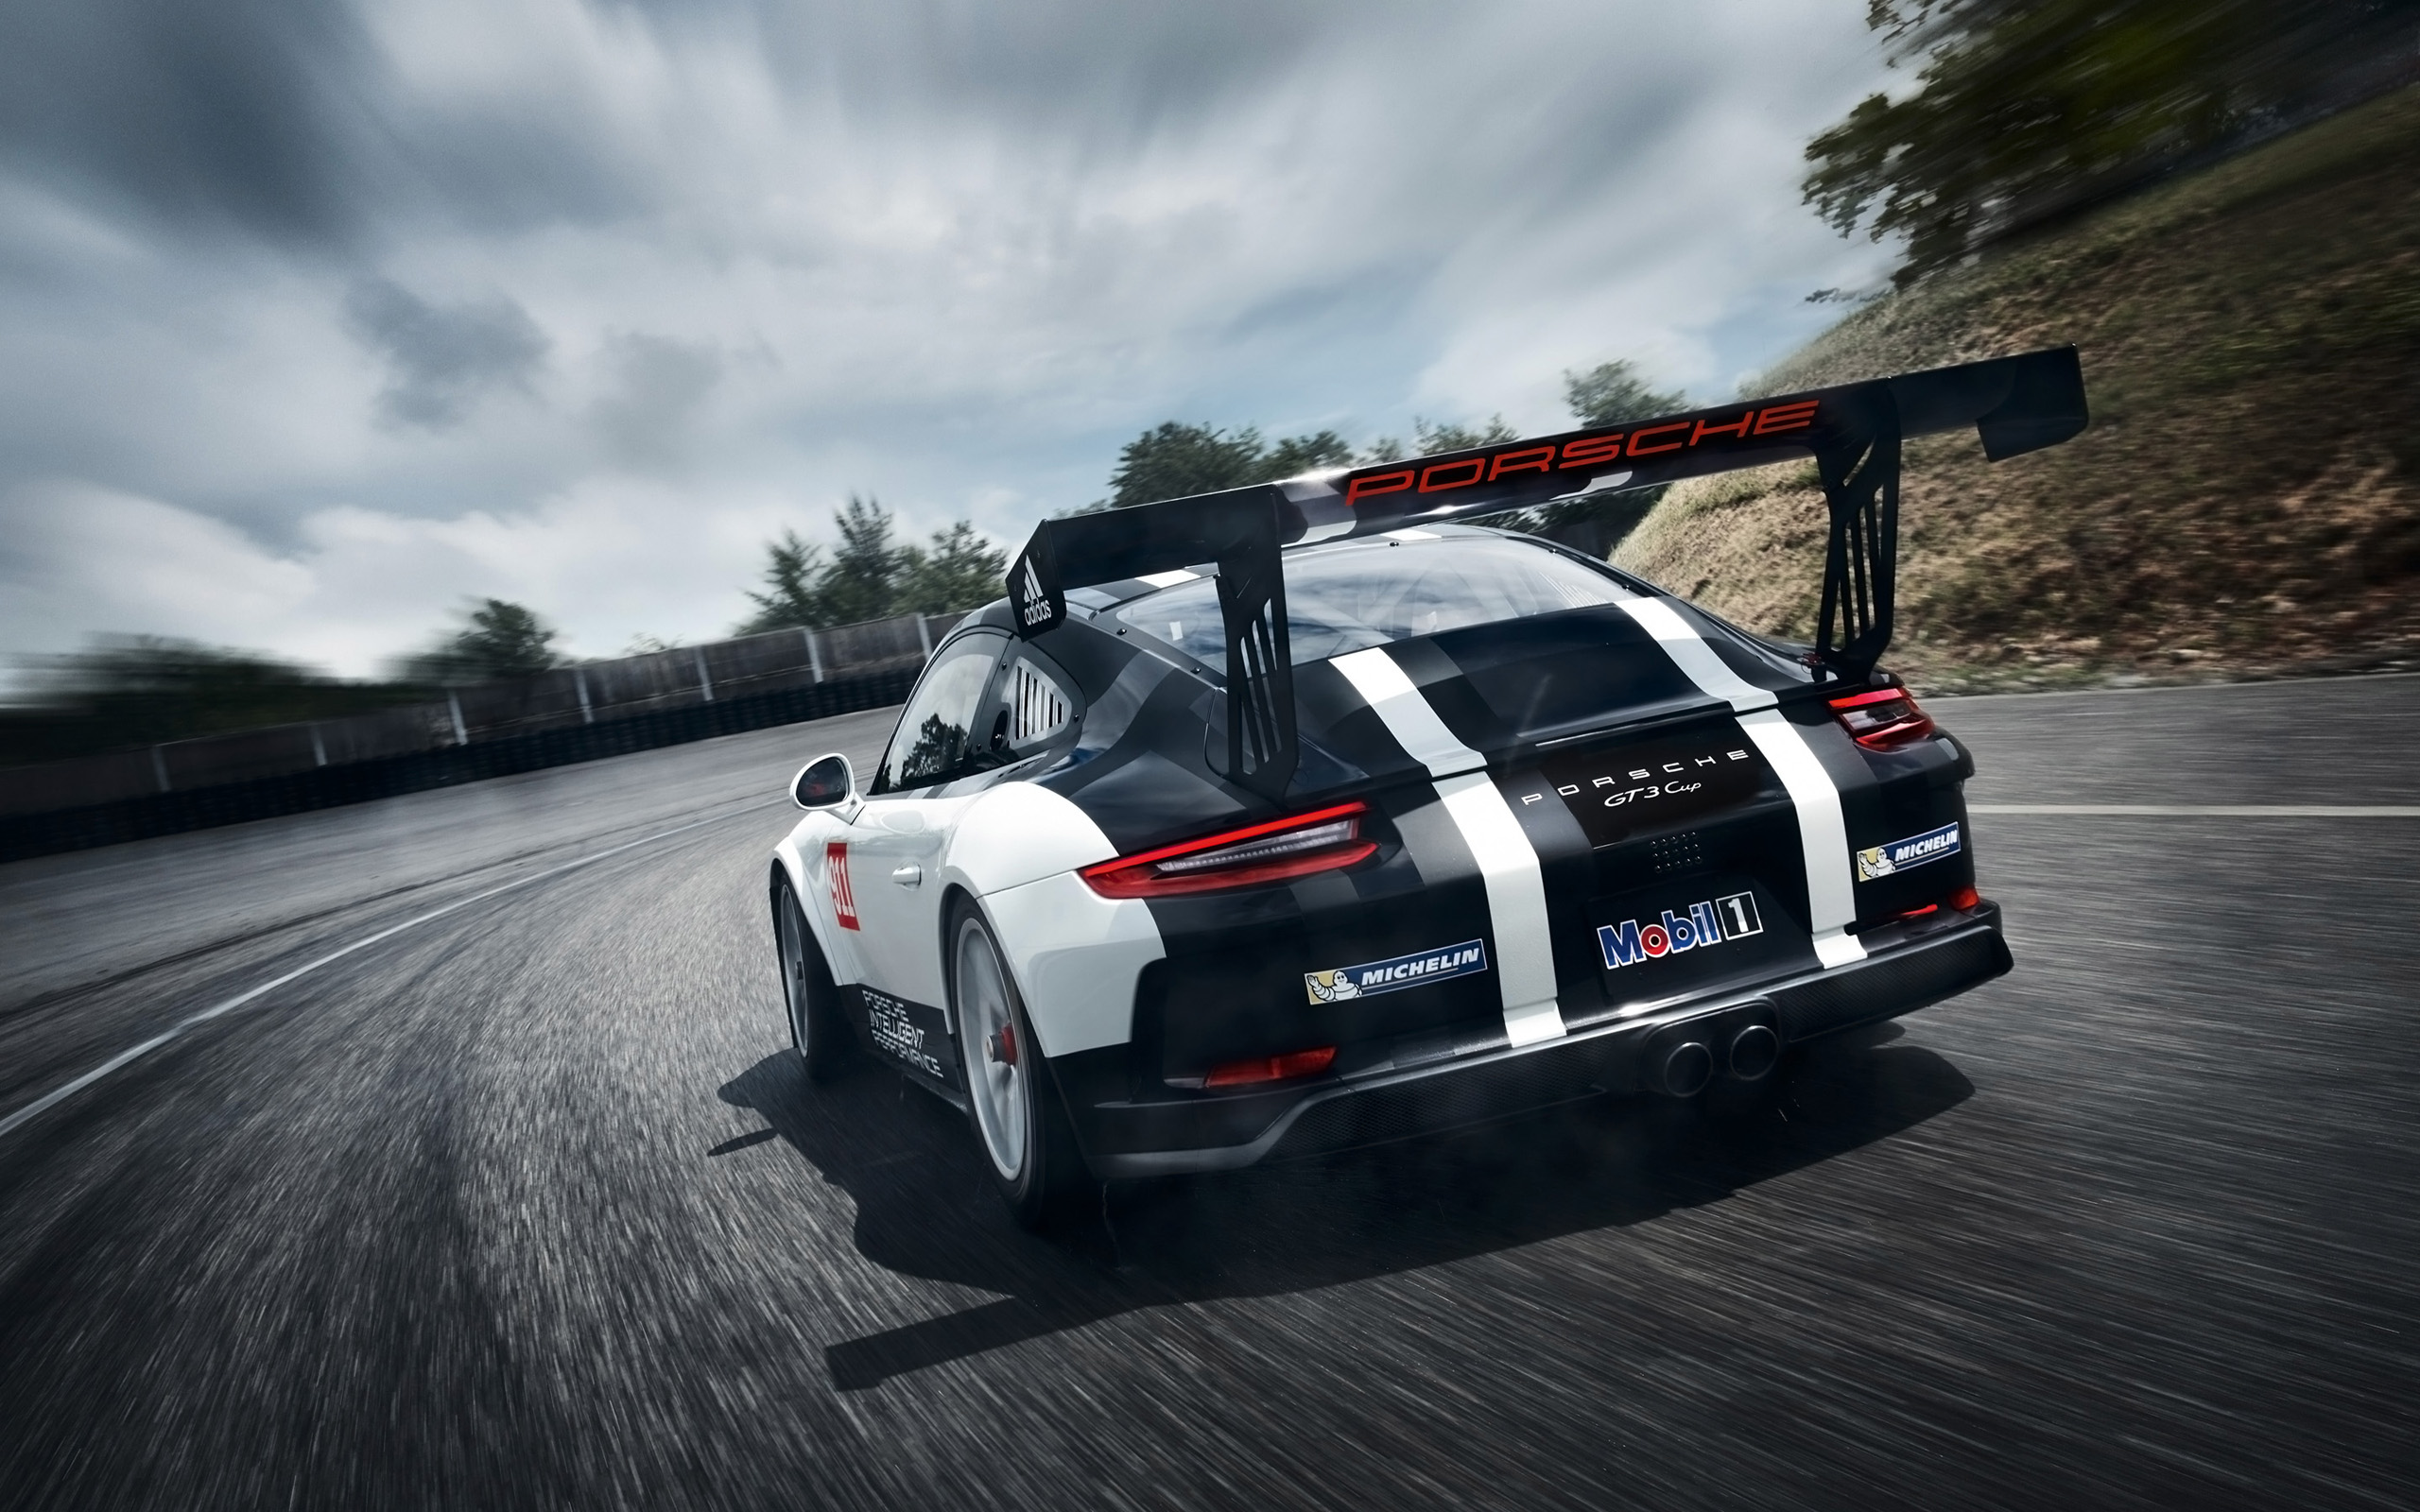 Descargar fondos de escritorio de Copa Porsche 911 Gt3 HD